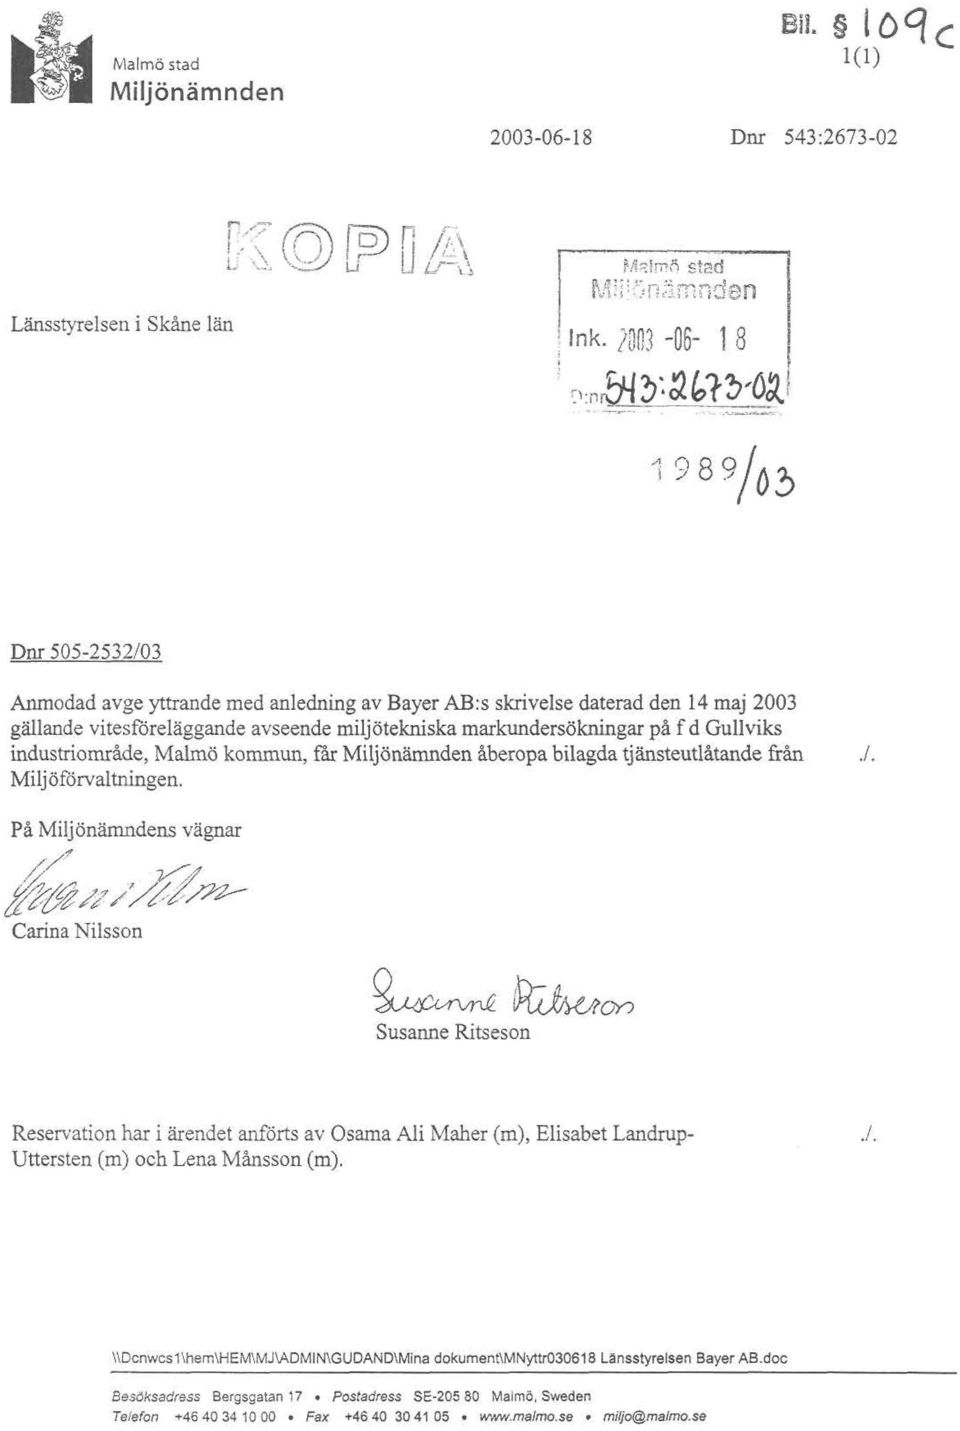 J Dm 505-2532/03 Anmodad avge yttrande med anledning av Bayer AB:s skrivelse daterad den 14 maj 2003 gällande vitesföreläggande avseende miljötekniska markundersökningar på f d Gullviks